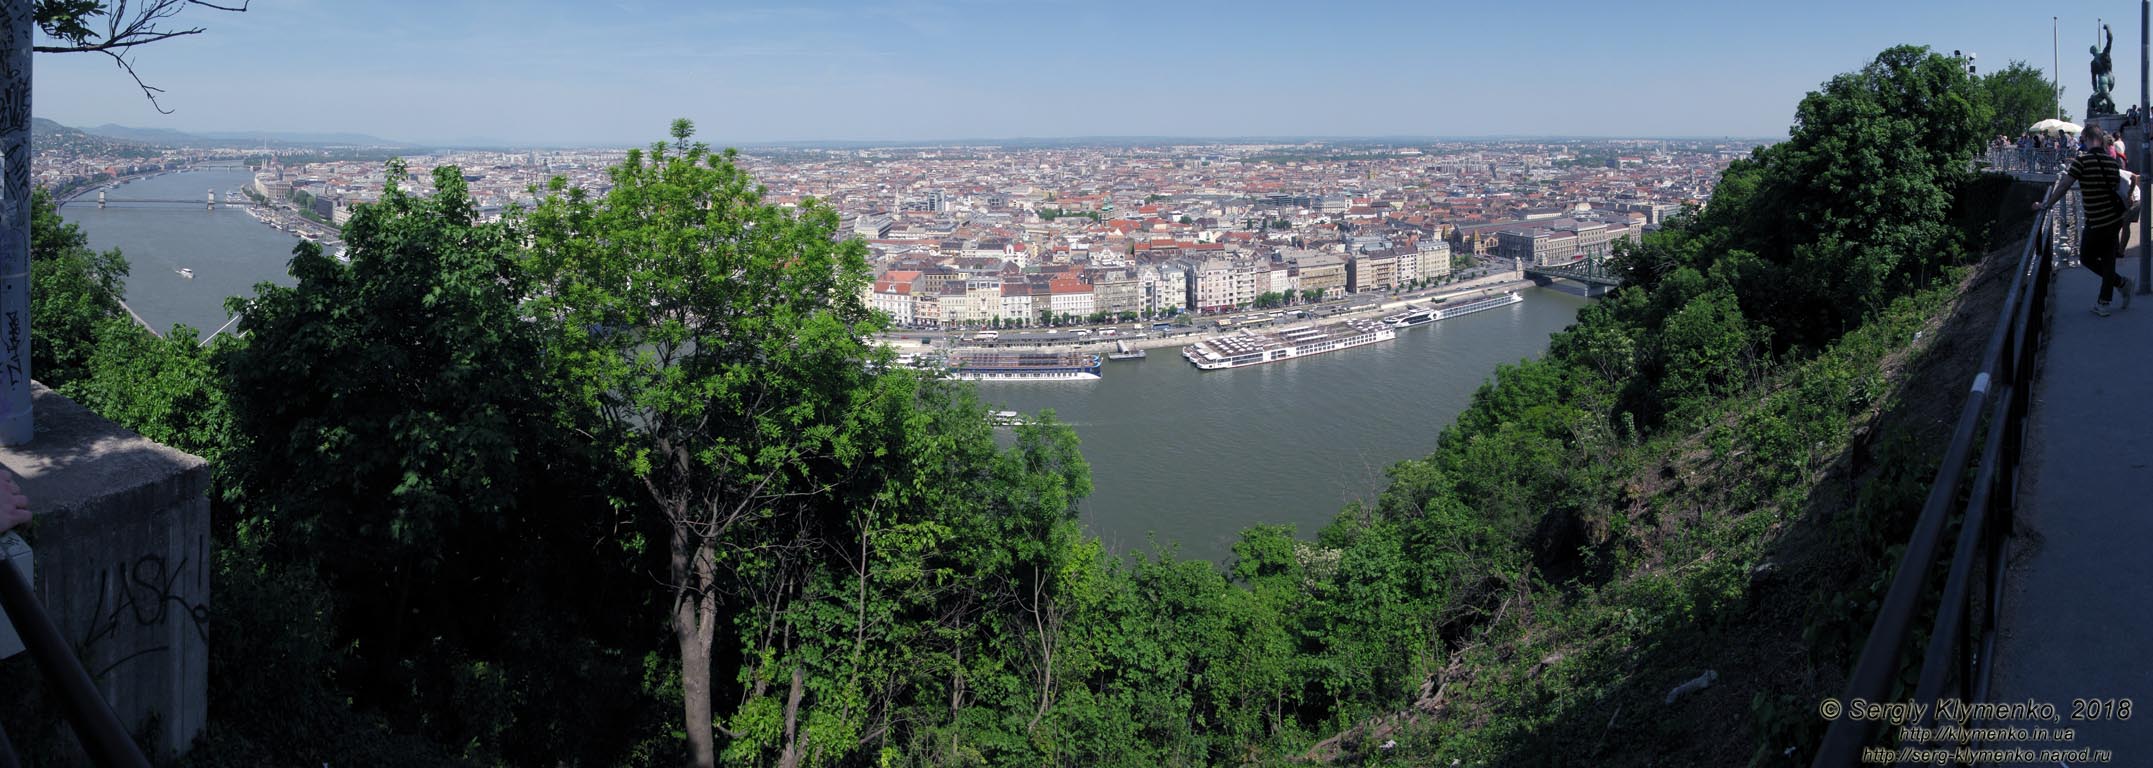 Будапешт (Budapest), Венгрия (Magyarország). Фото. Вид на Дунай и Пешт с горы Геллерт (Gellert-hegy) от Цитадели (Citadella). Панорама ~150°.